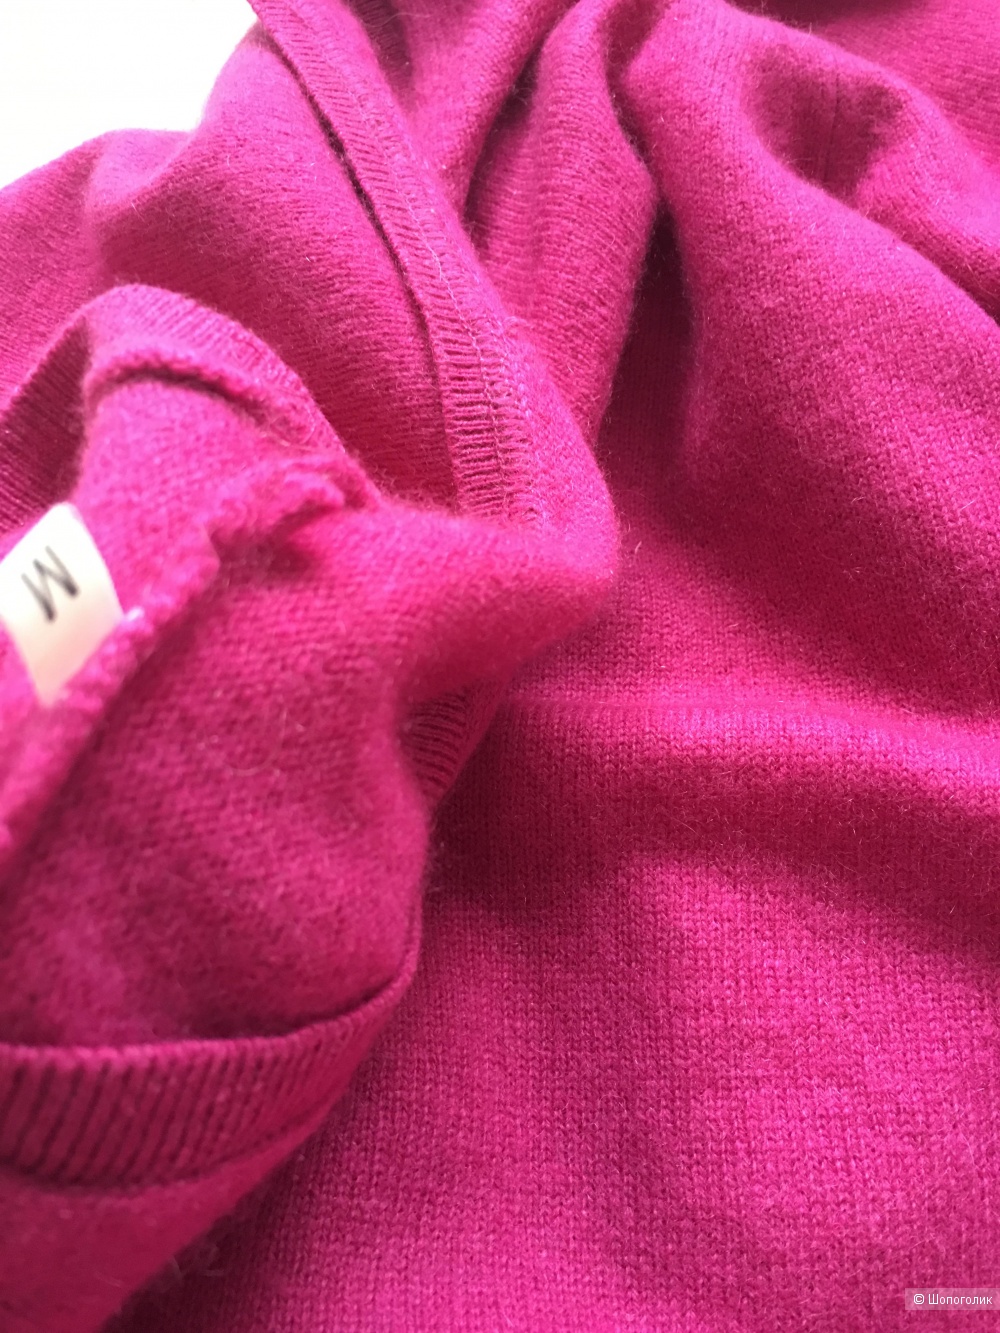 Пуловер no name размер М цвет розовая фуксия